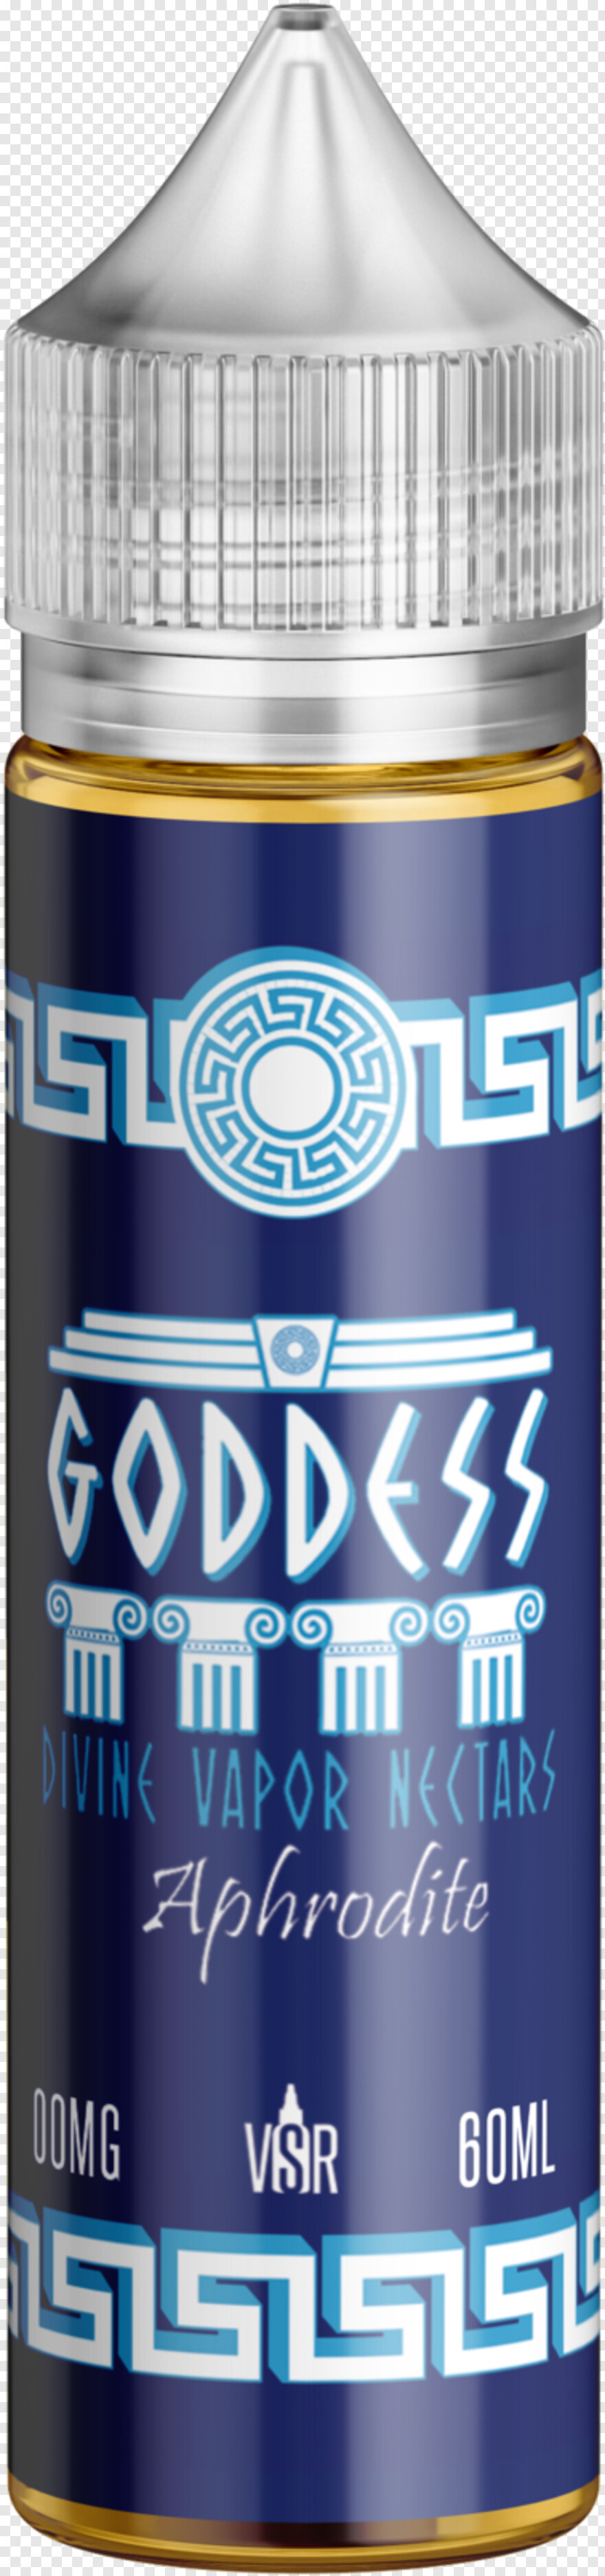 goddess # 791810